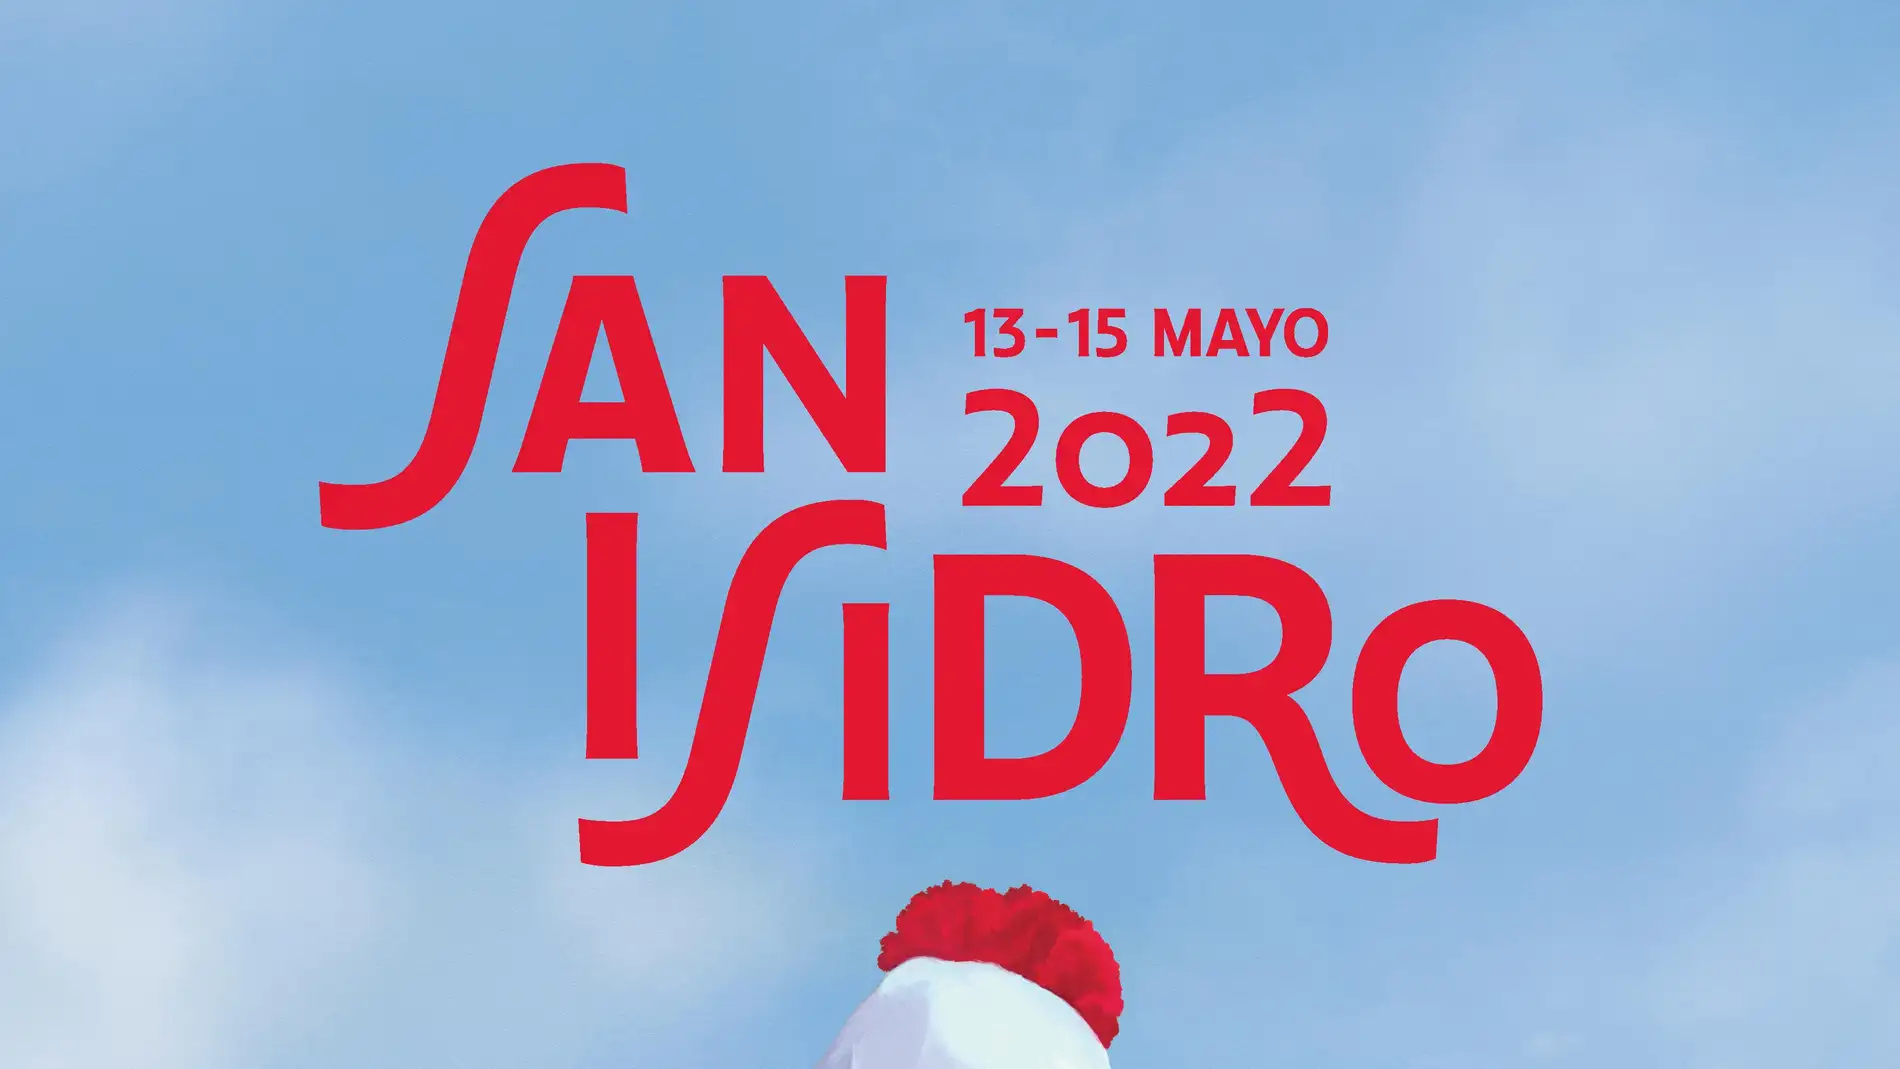 San 2022: completa y horarios de las fiestas de Madrid | Onda Cero Radio